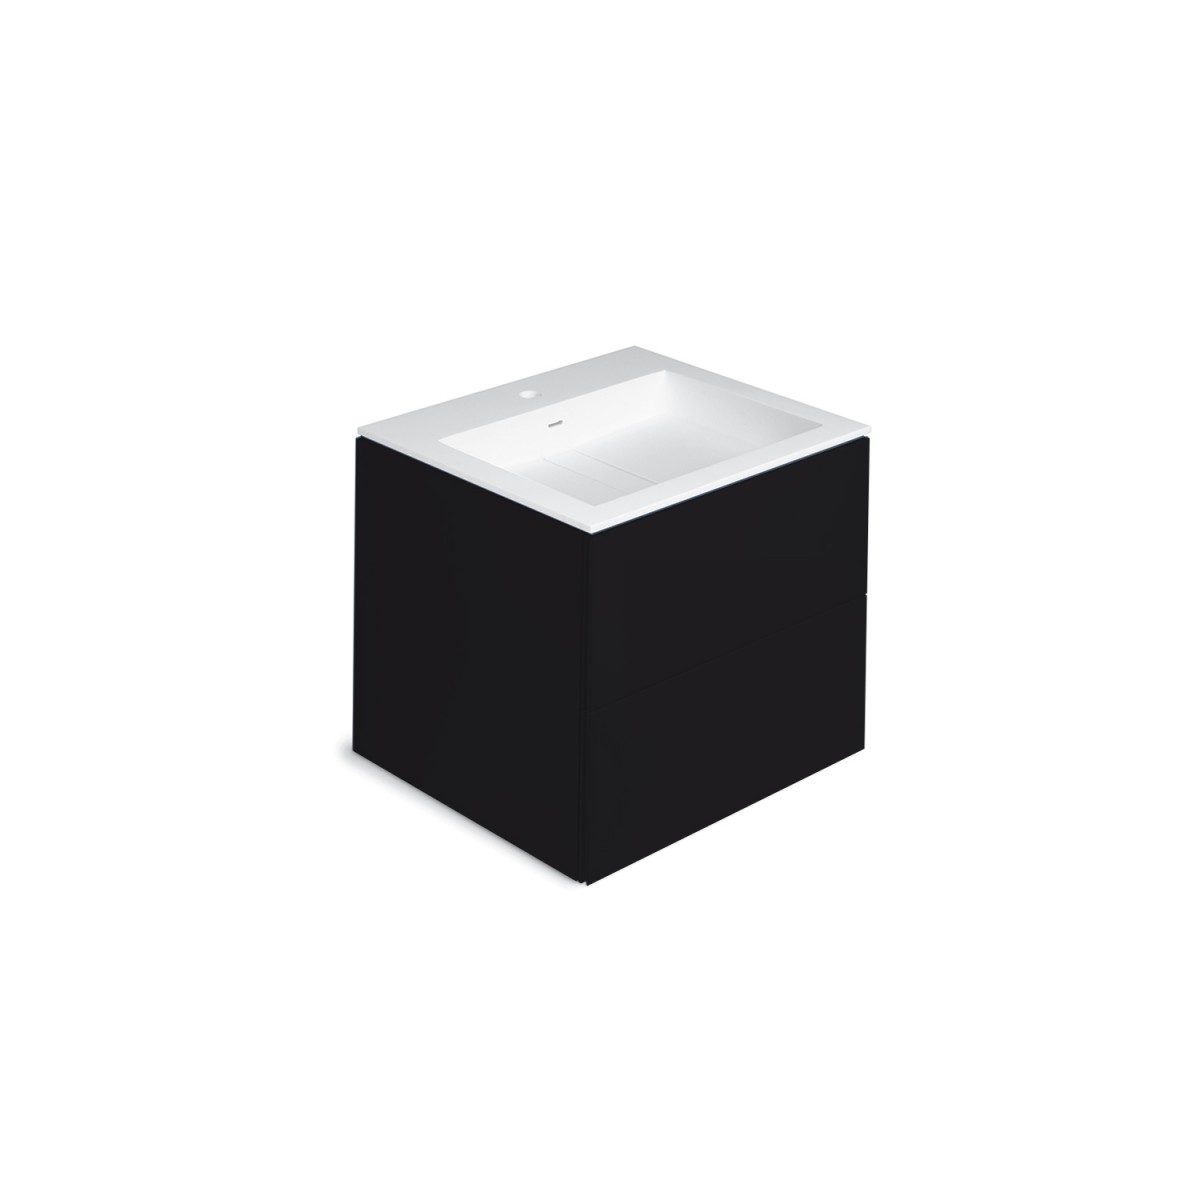 cosmic Block Schrank 2 Schubladen mit Waschbecken matt schwarz matt gehäuse schubladenfront schwarz matt Becken ohne Hahnloch 60 5x50x52cm-779121053108108